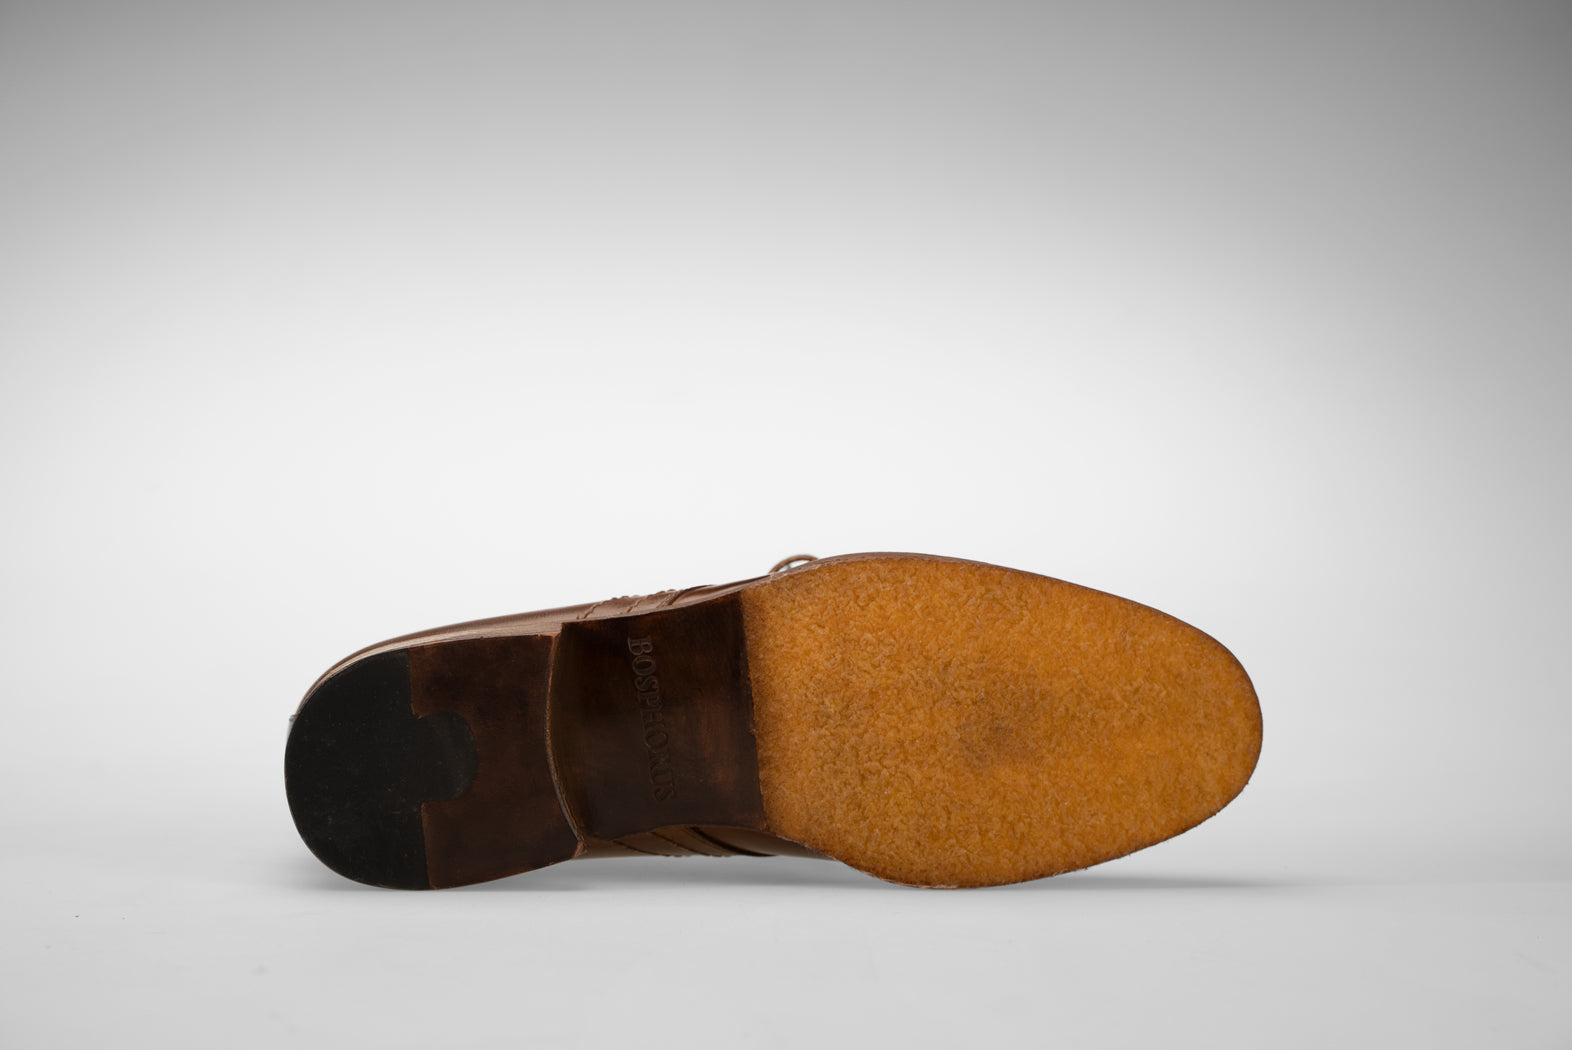 Bosphorus Leather Chukka Boots - Gulf 201